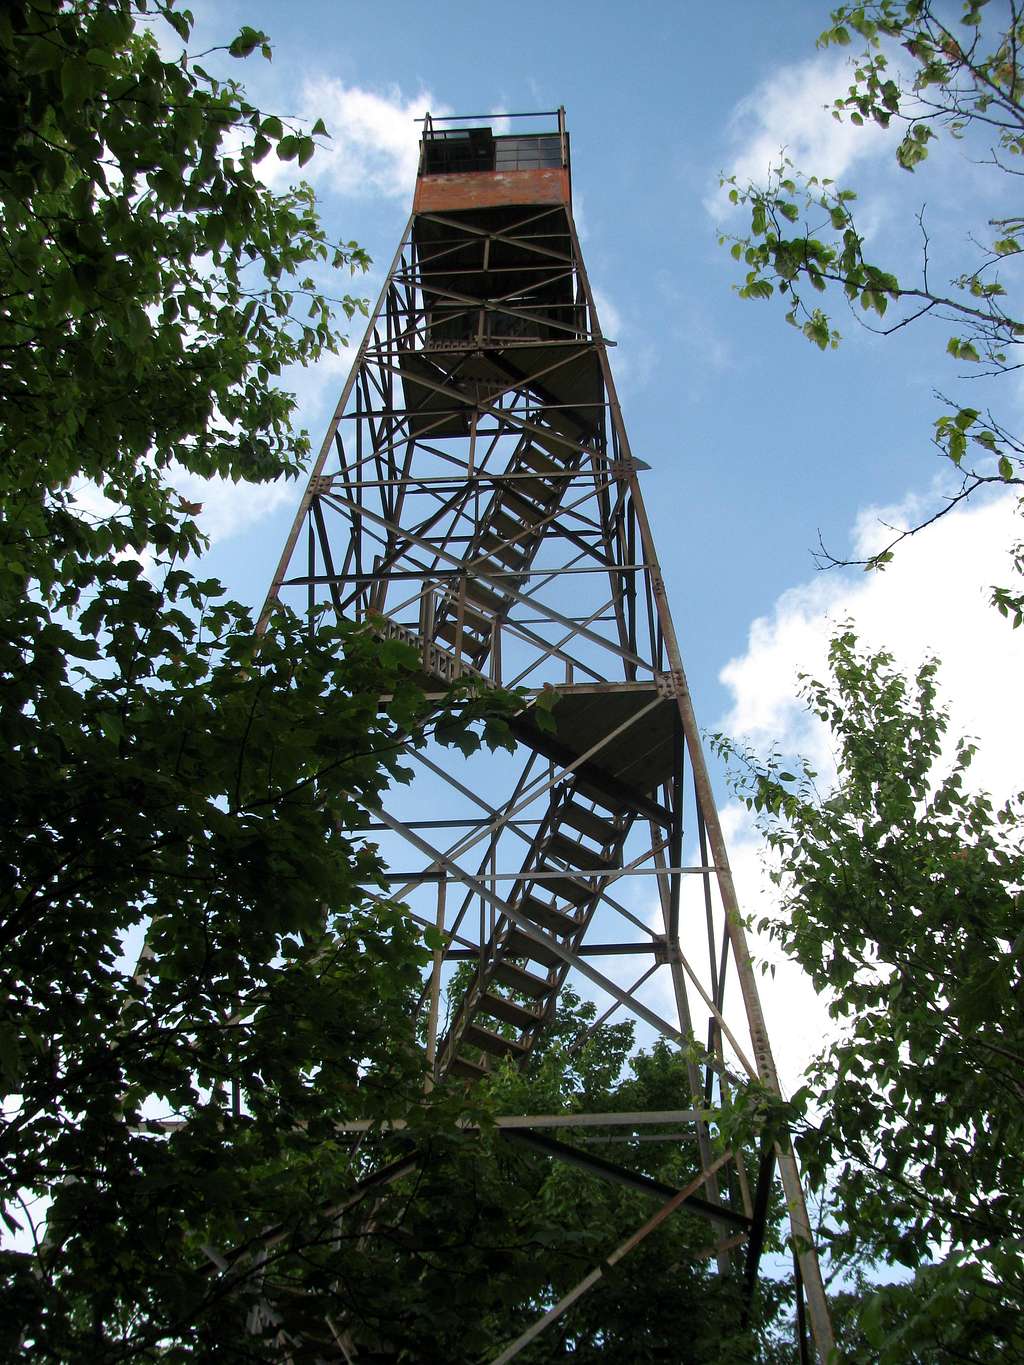 Shuckstack Firetower